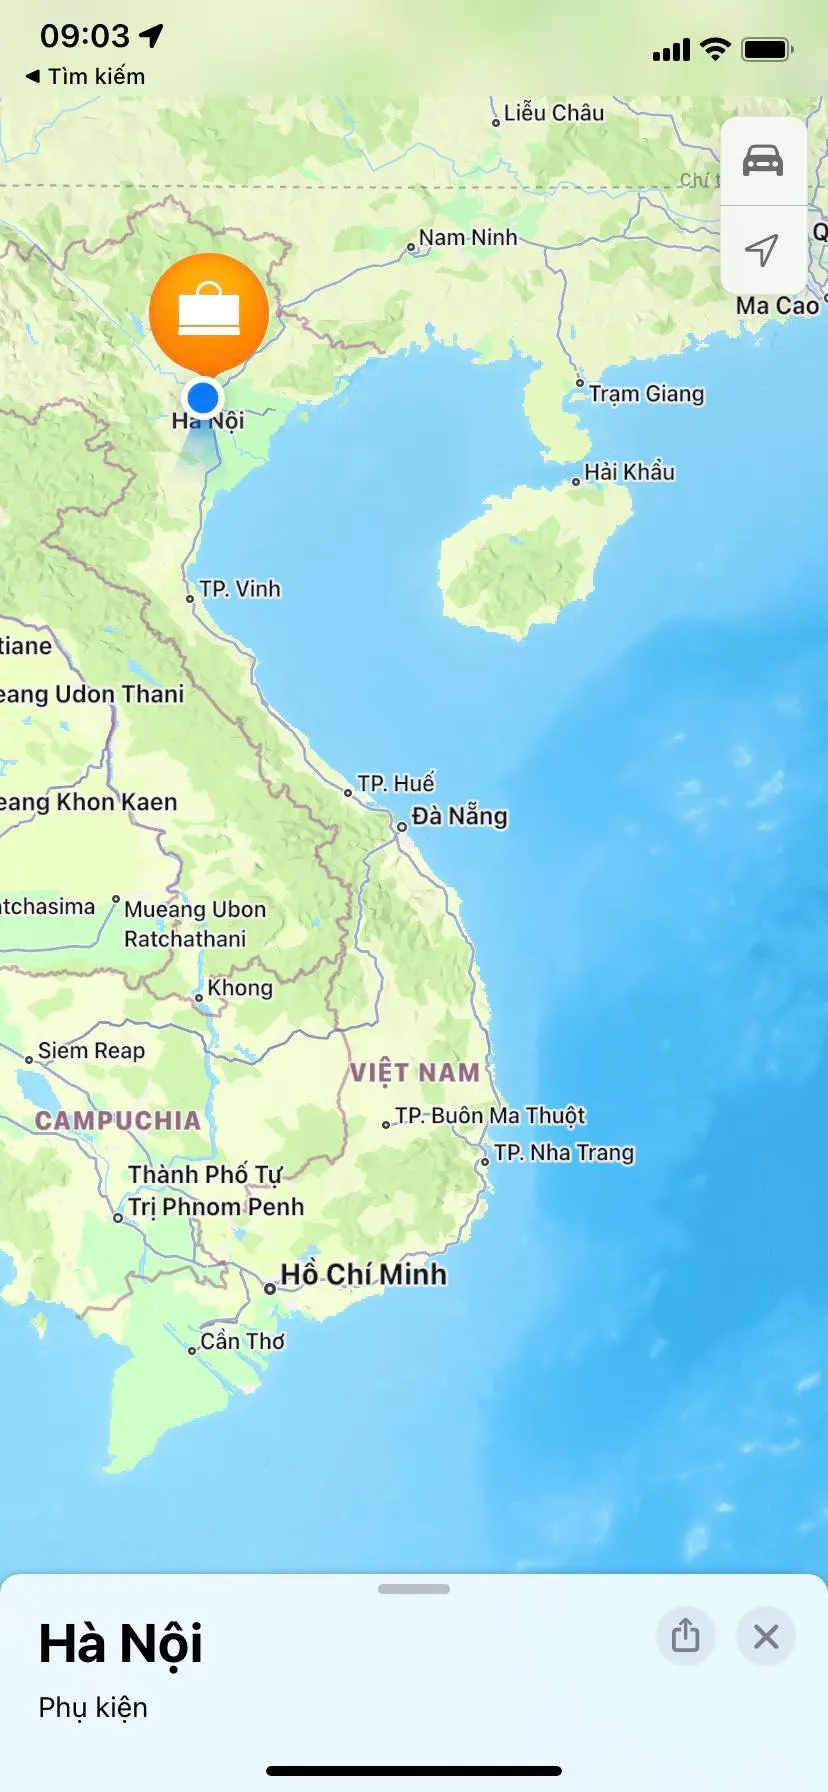 Quần đảo Hoàng Sa, Trường Sa vẫn không thấy "tăm hơi” trên Apple Maps